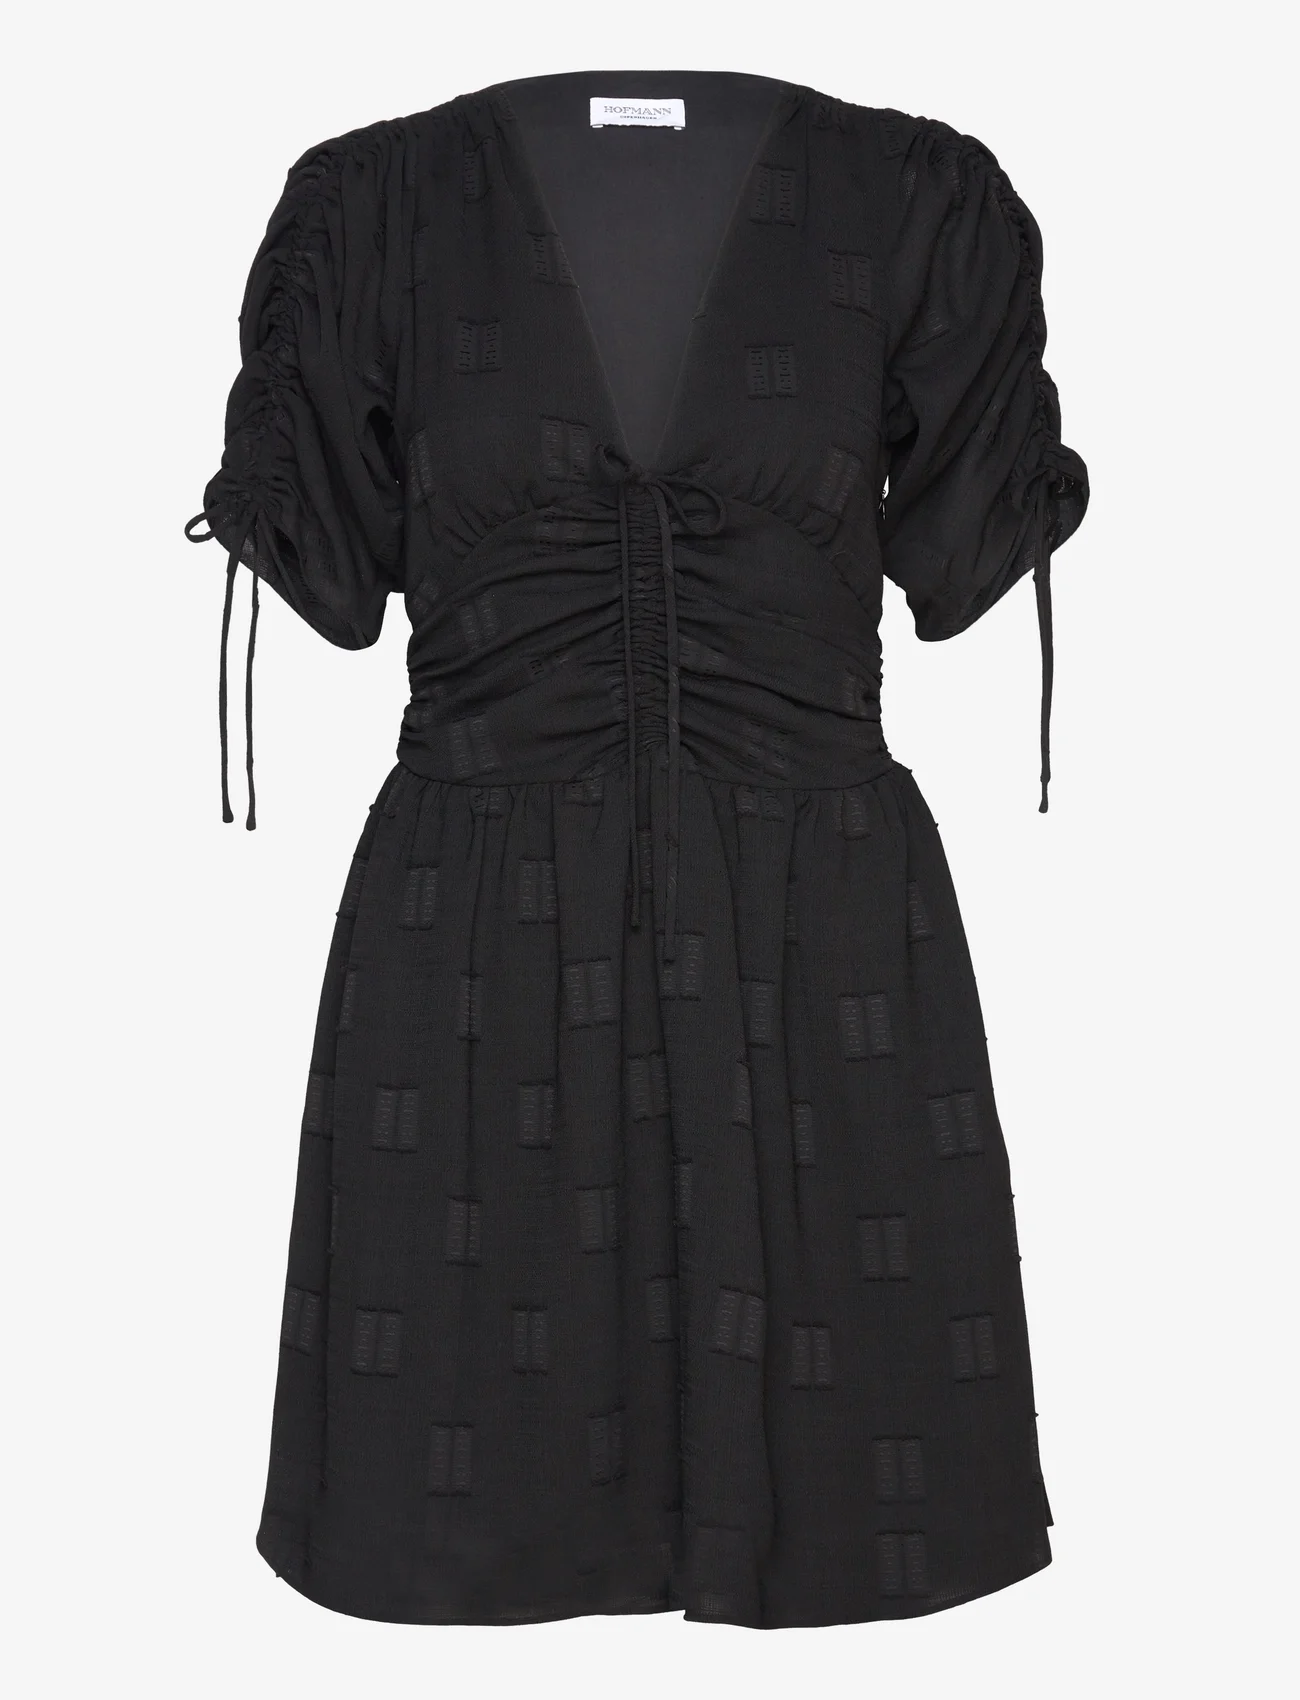 Hofmann Copenhagen - Emmeline - feestelijke kleding voor outlet-prijzen - black - 0